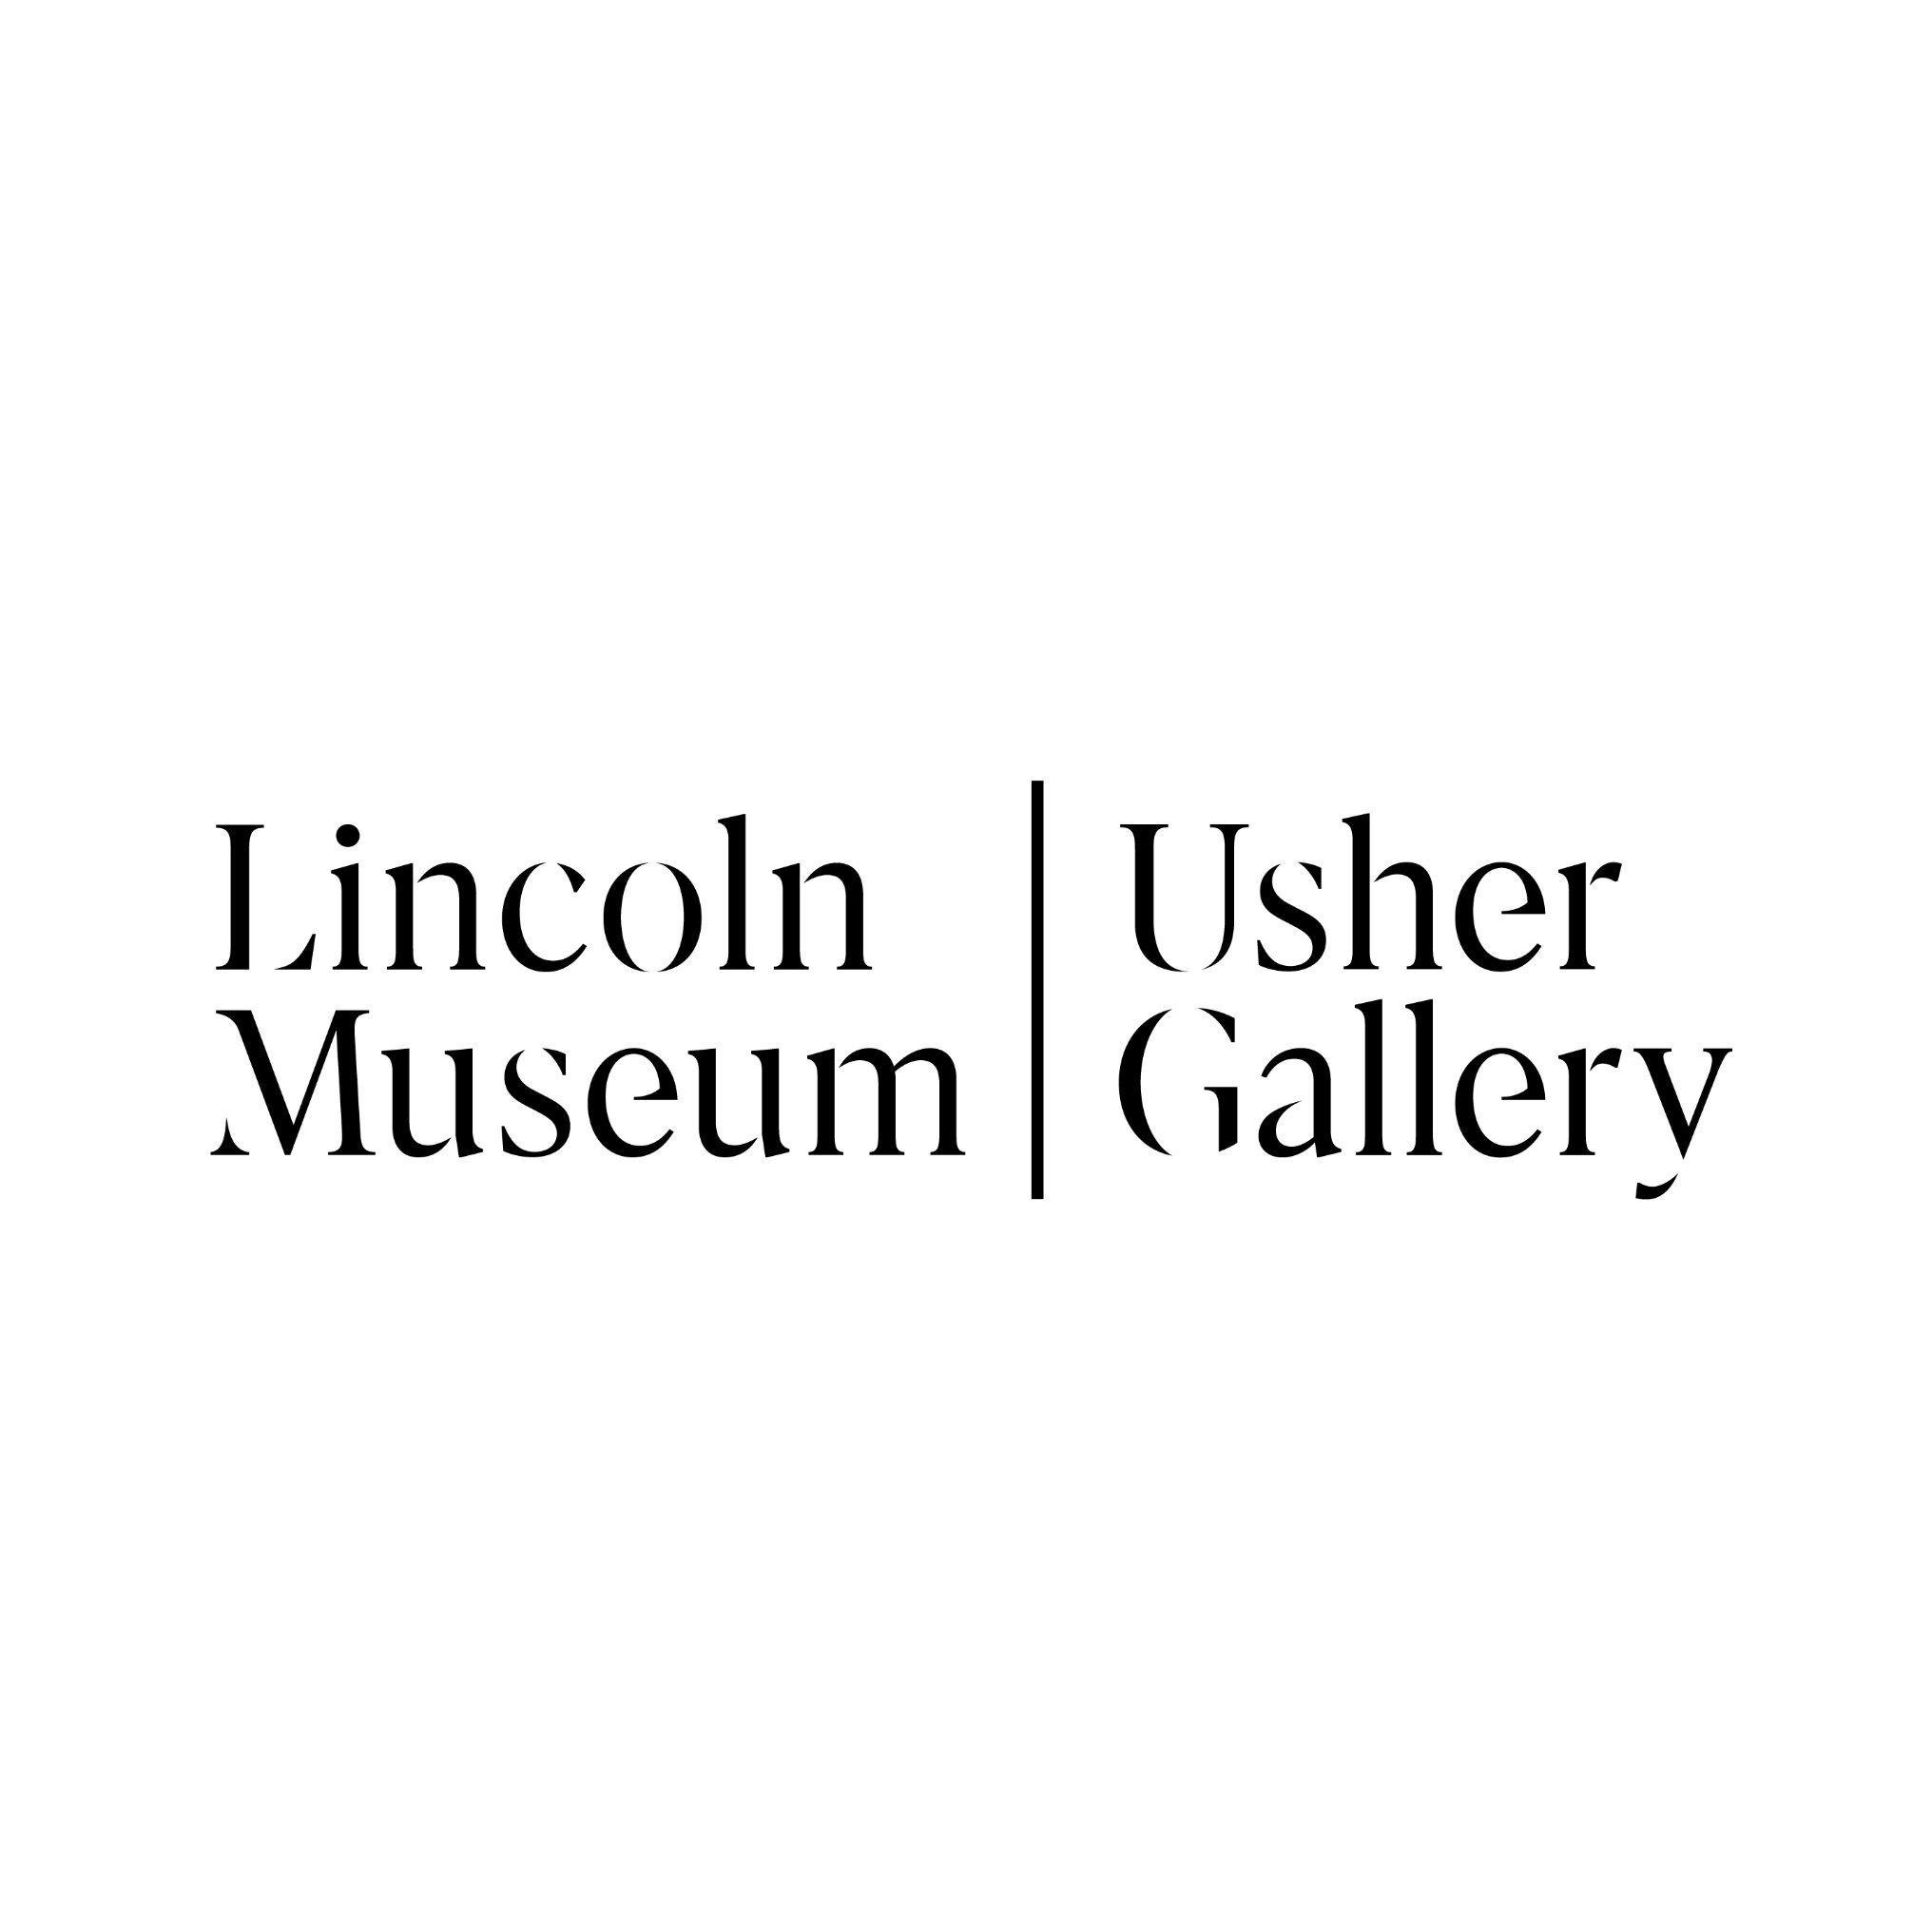 Usher Gallery Logo.jpg